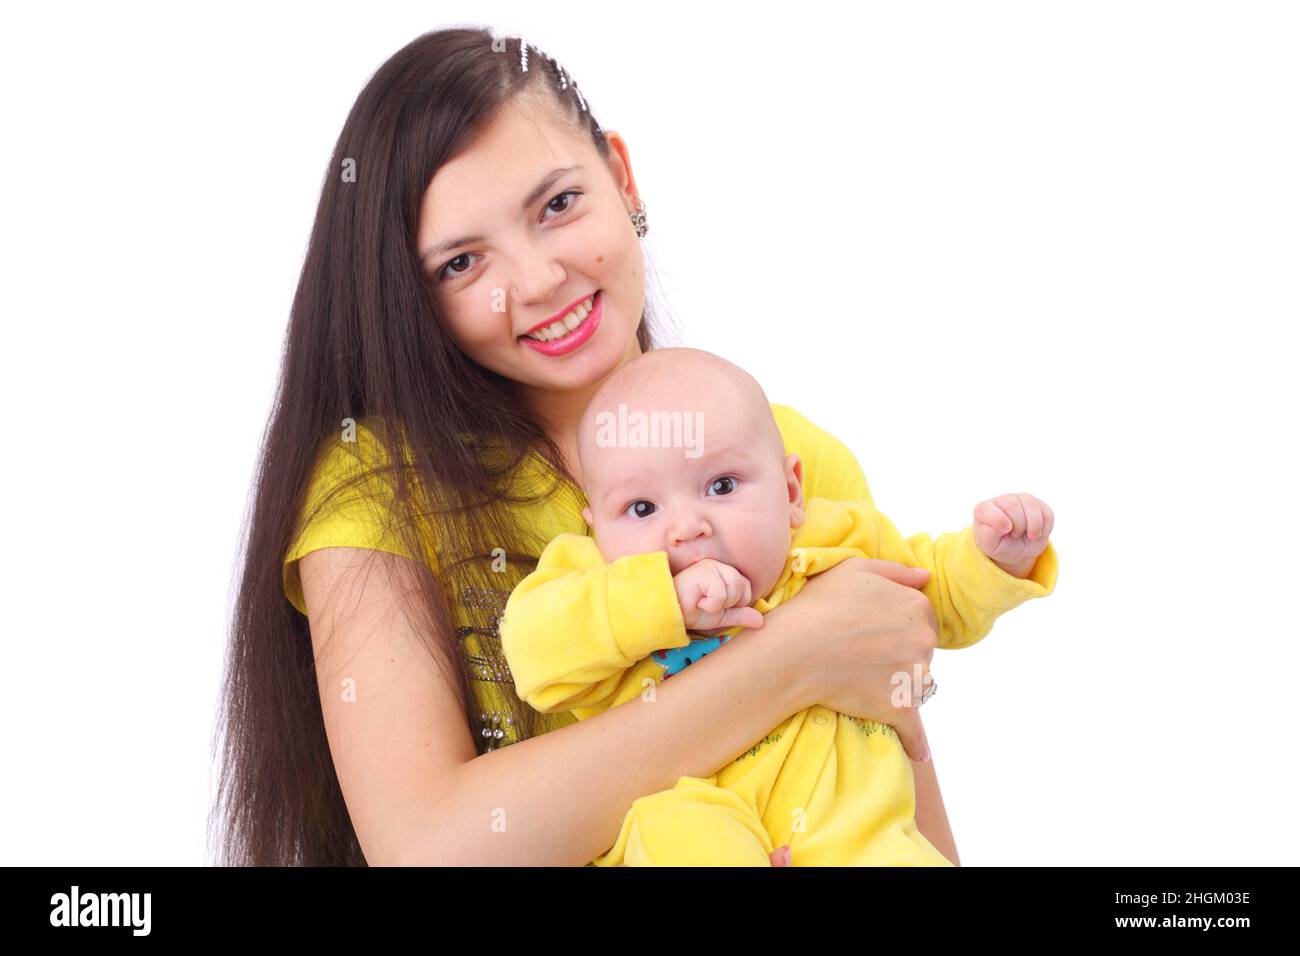 Ziemlich glückliche junge Mutter mit dem niedlichen kleinen Baby in gelber Kleidung Stockfoto